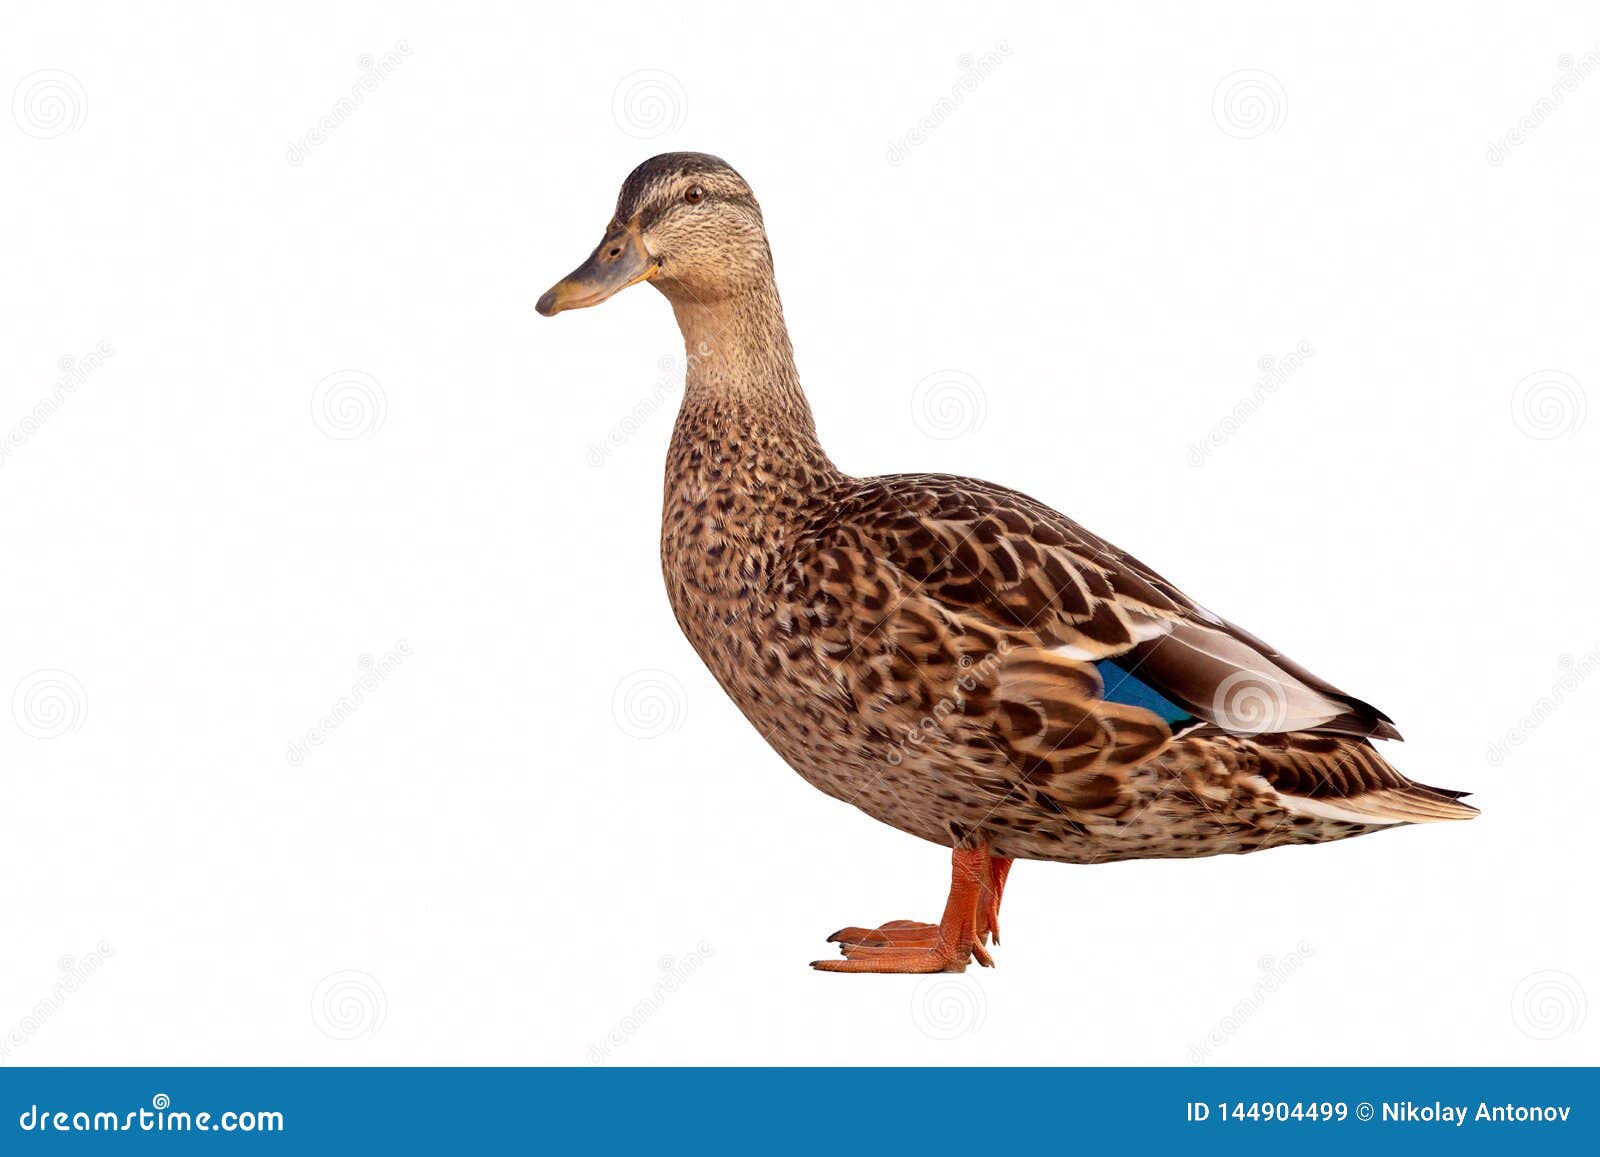 brown mallard duck anas platyrhynchos  on white background